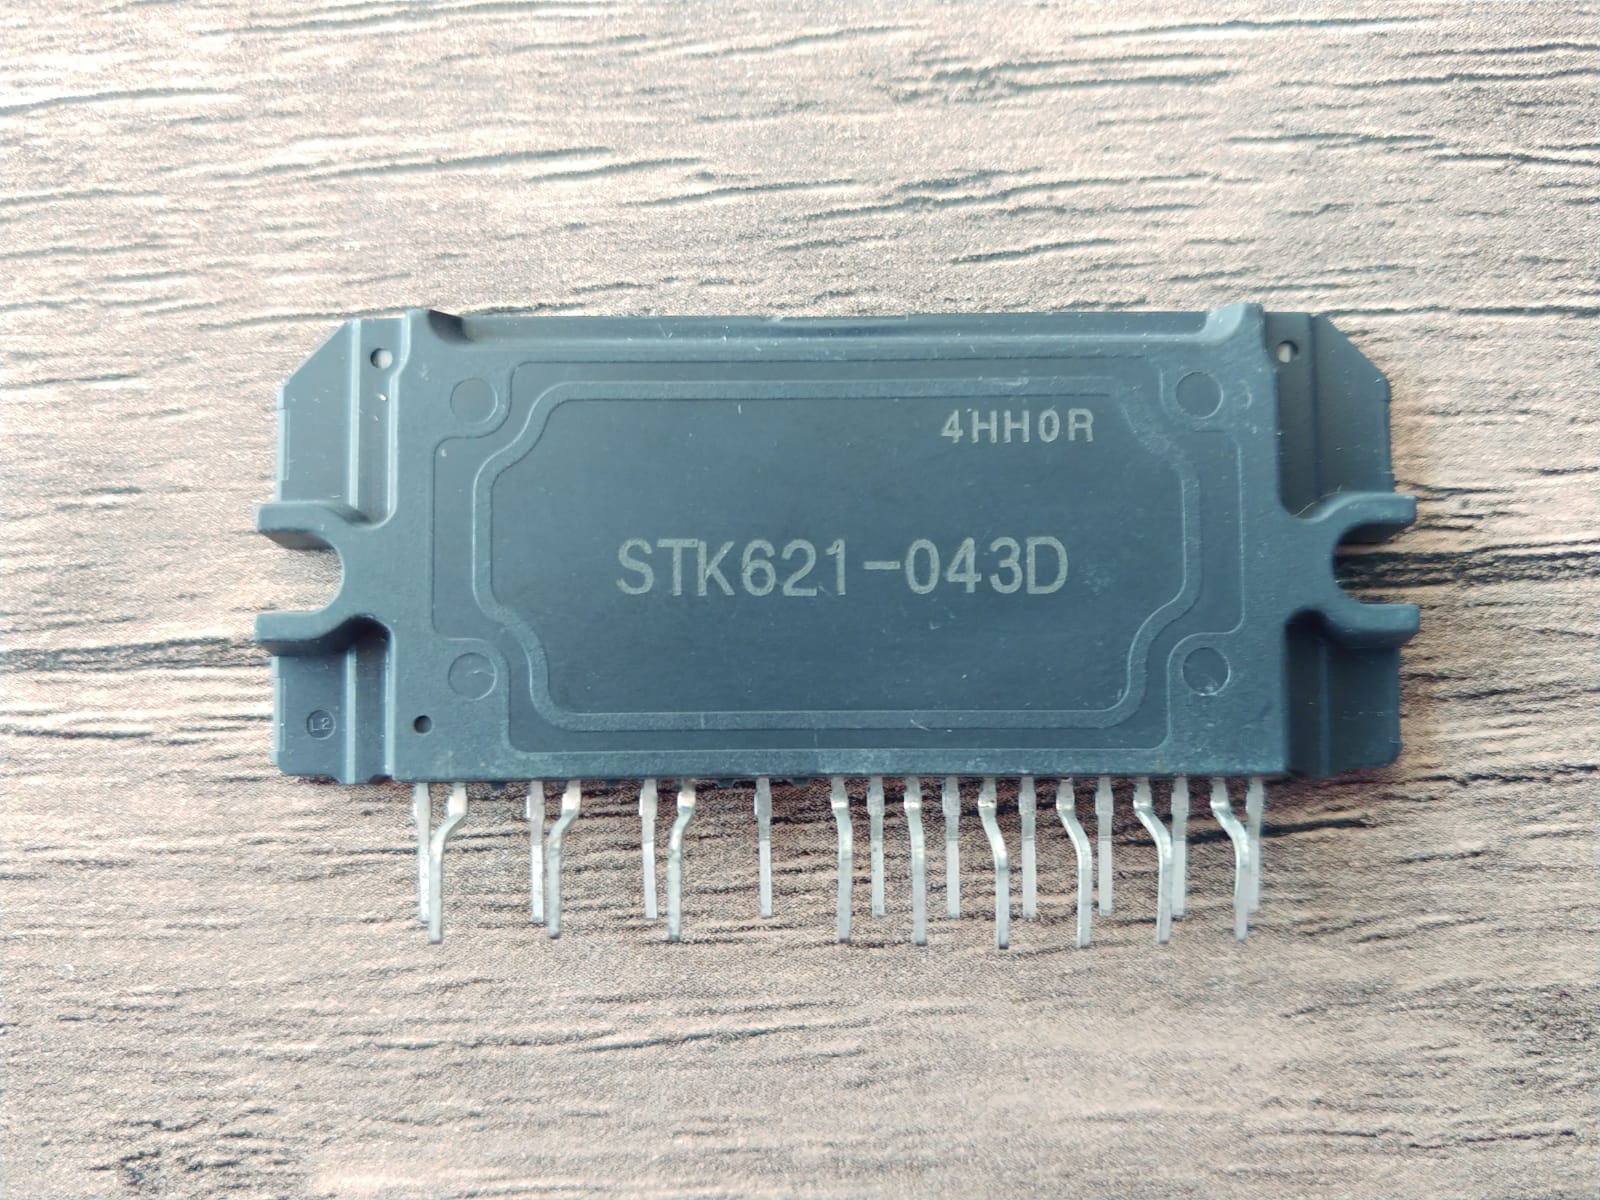 STK621-043D